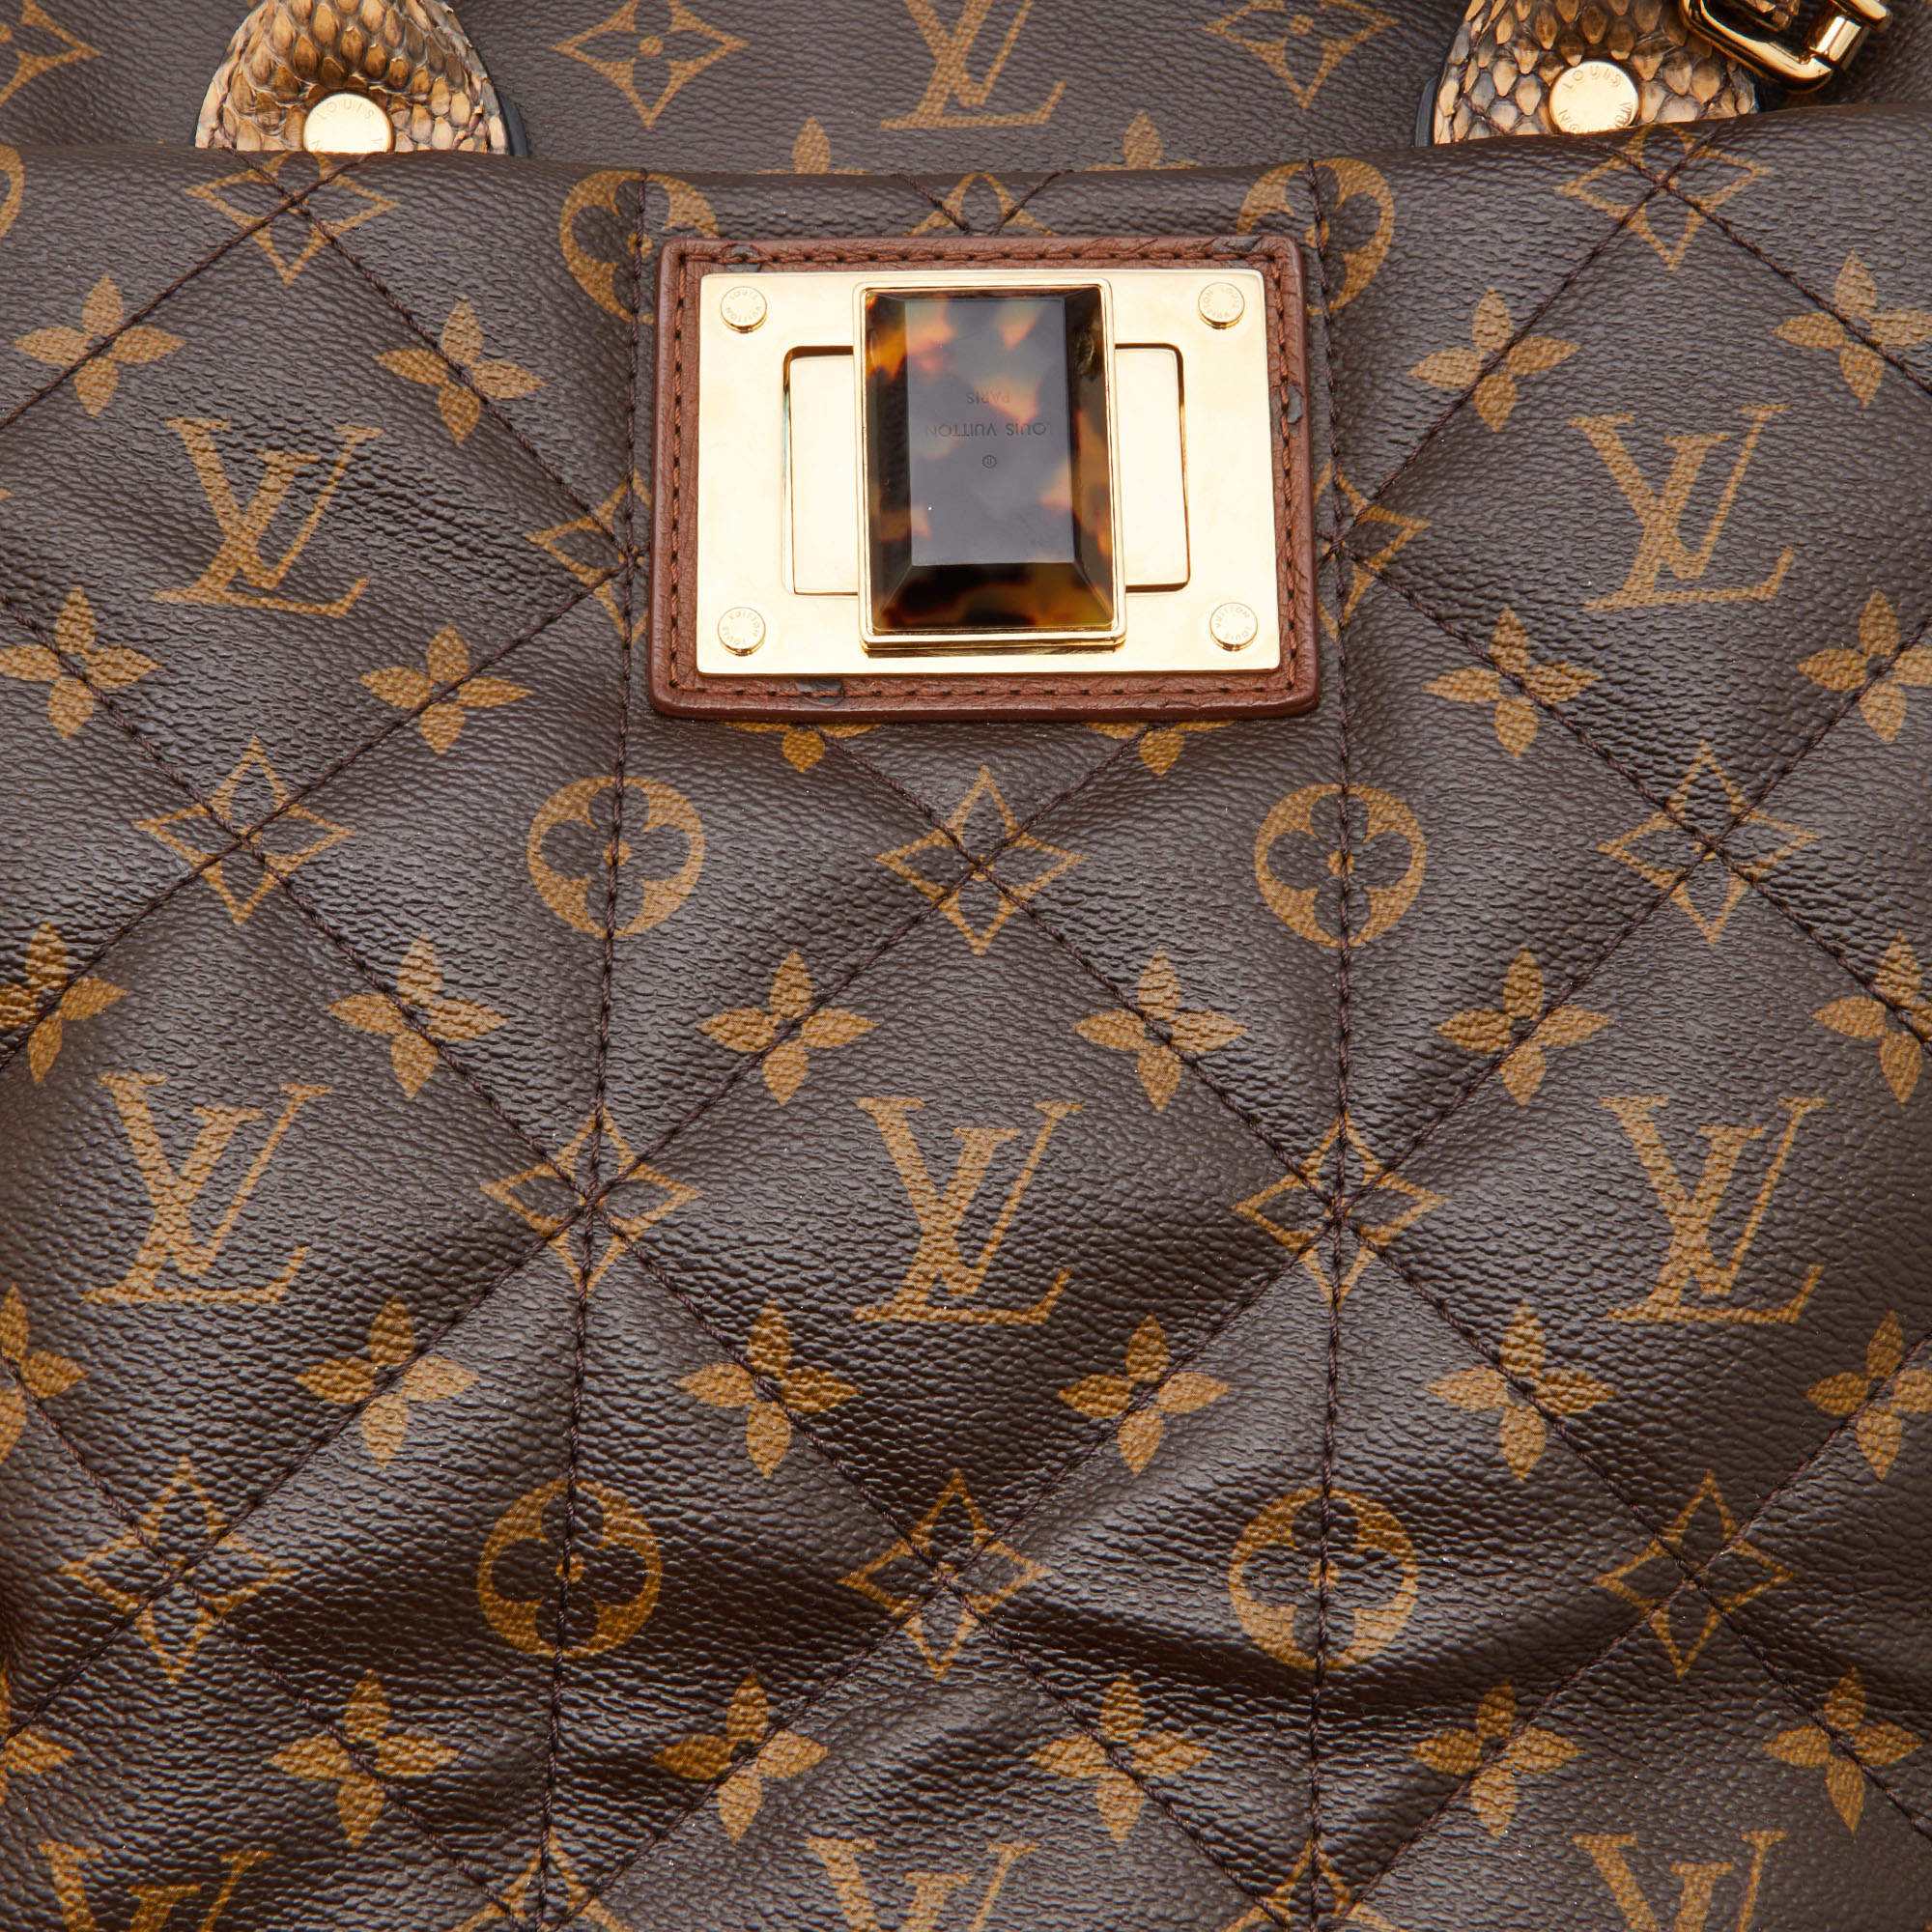 Louis Vuitton, Limited Edition Monogram Etoile Exotique …